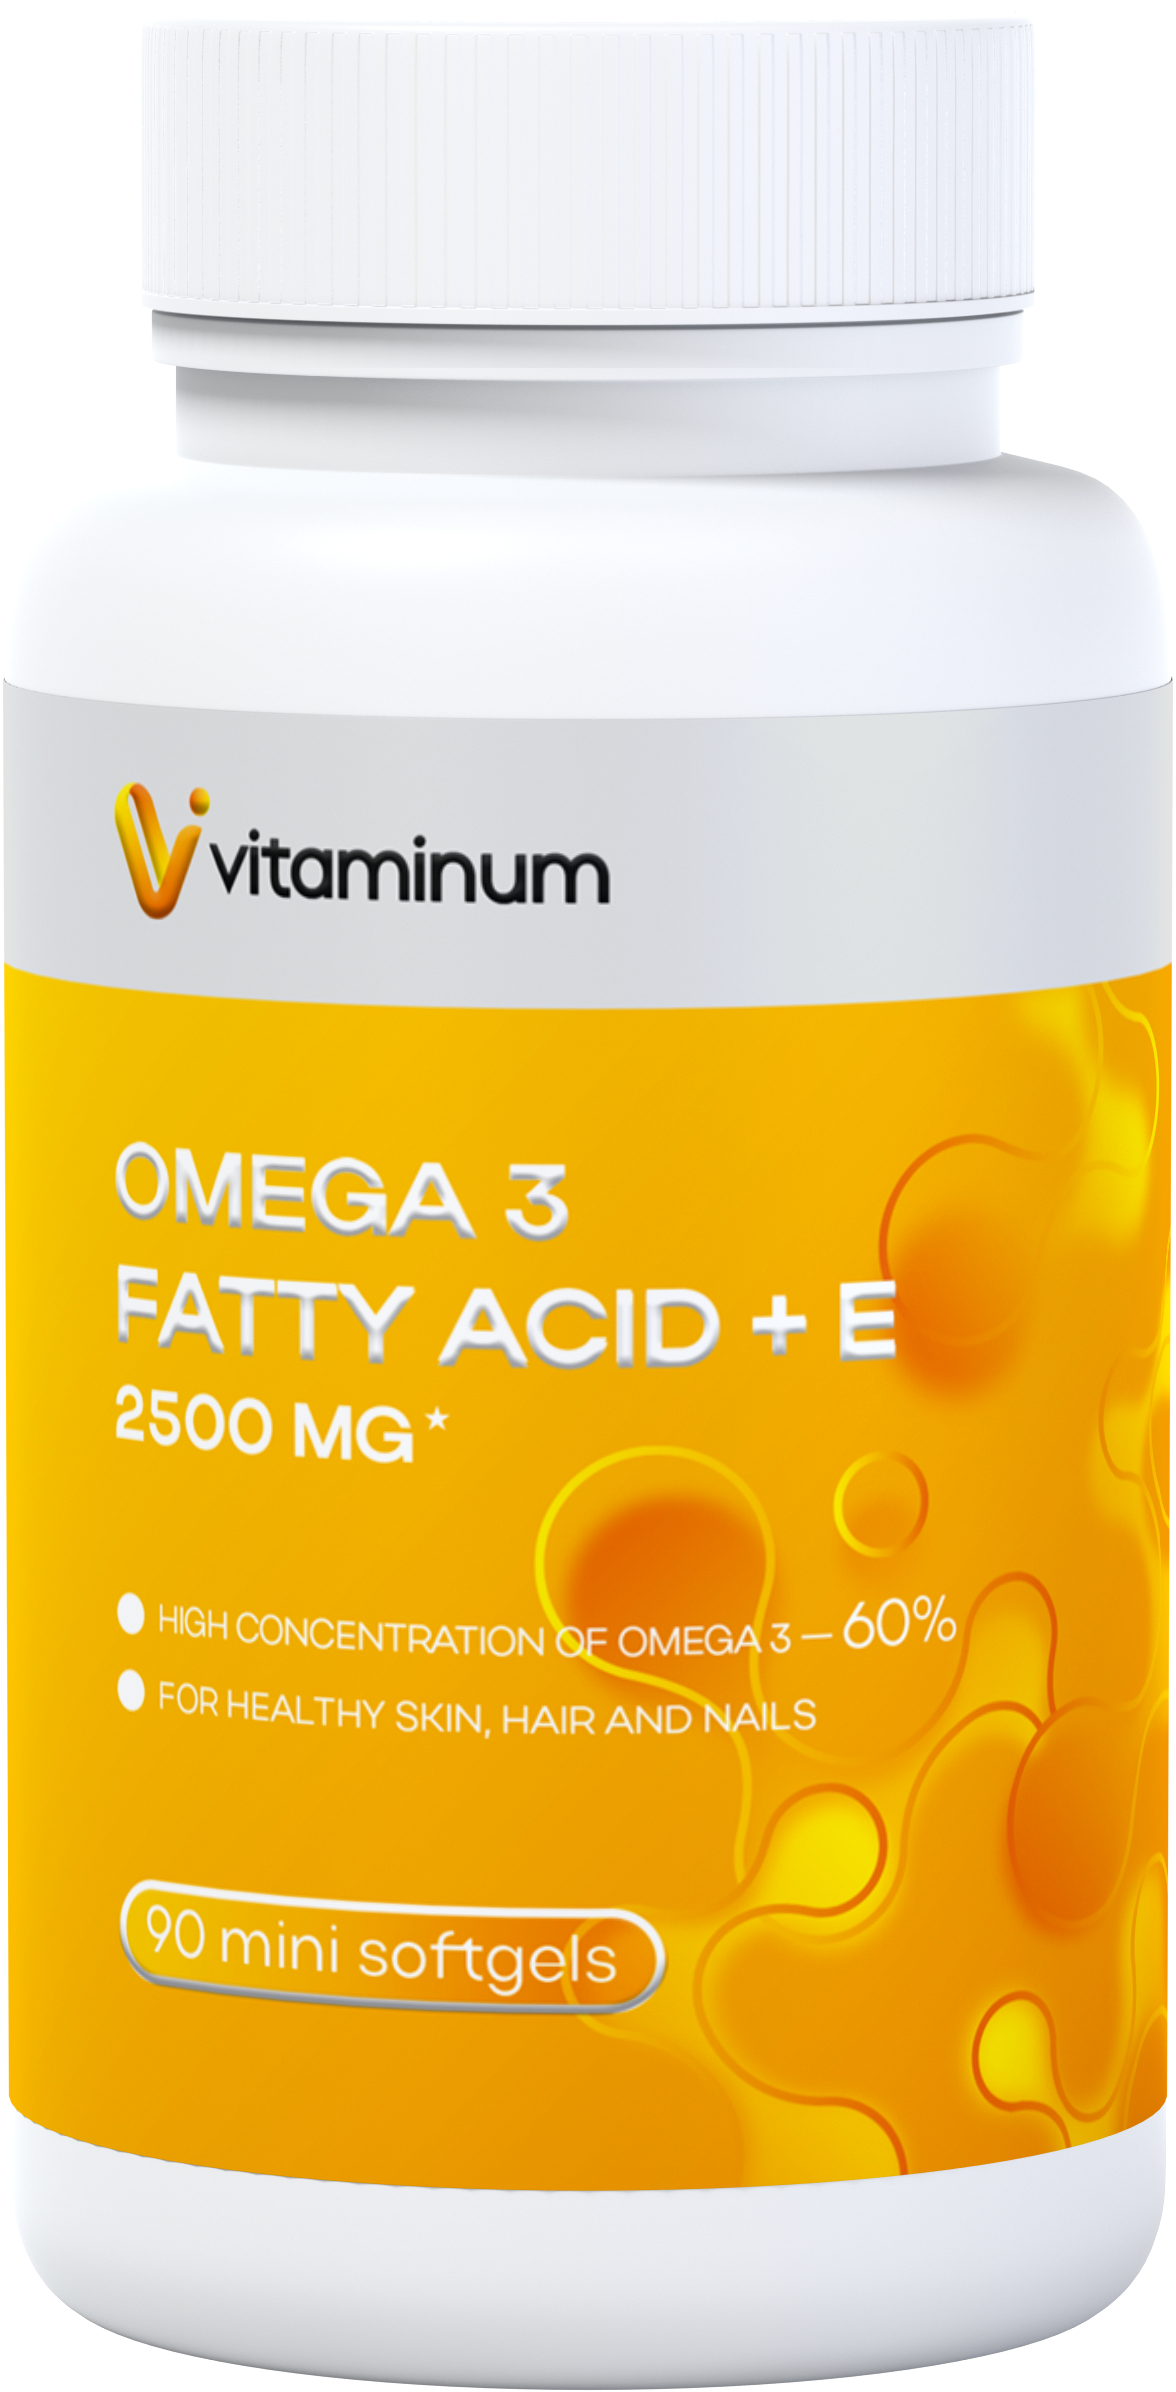  Vitaminum ОМЕГА 3 60% + витамин Е (2500 MG*) 90 капсул 700 мг  в Павлове